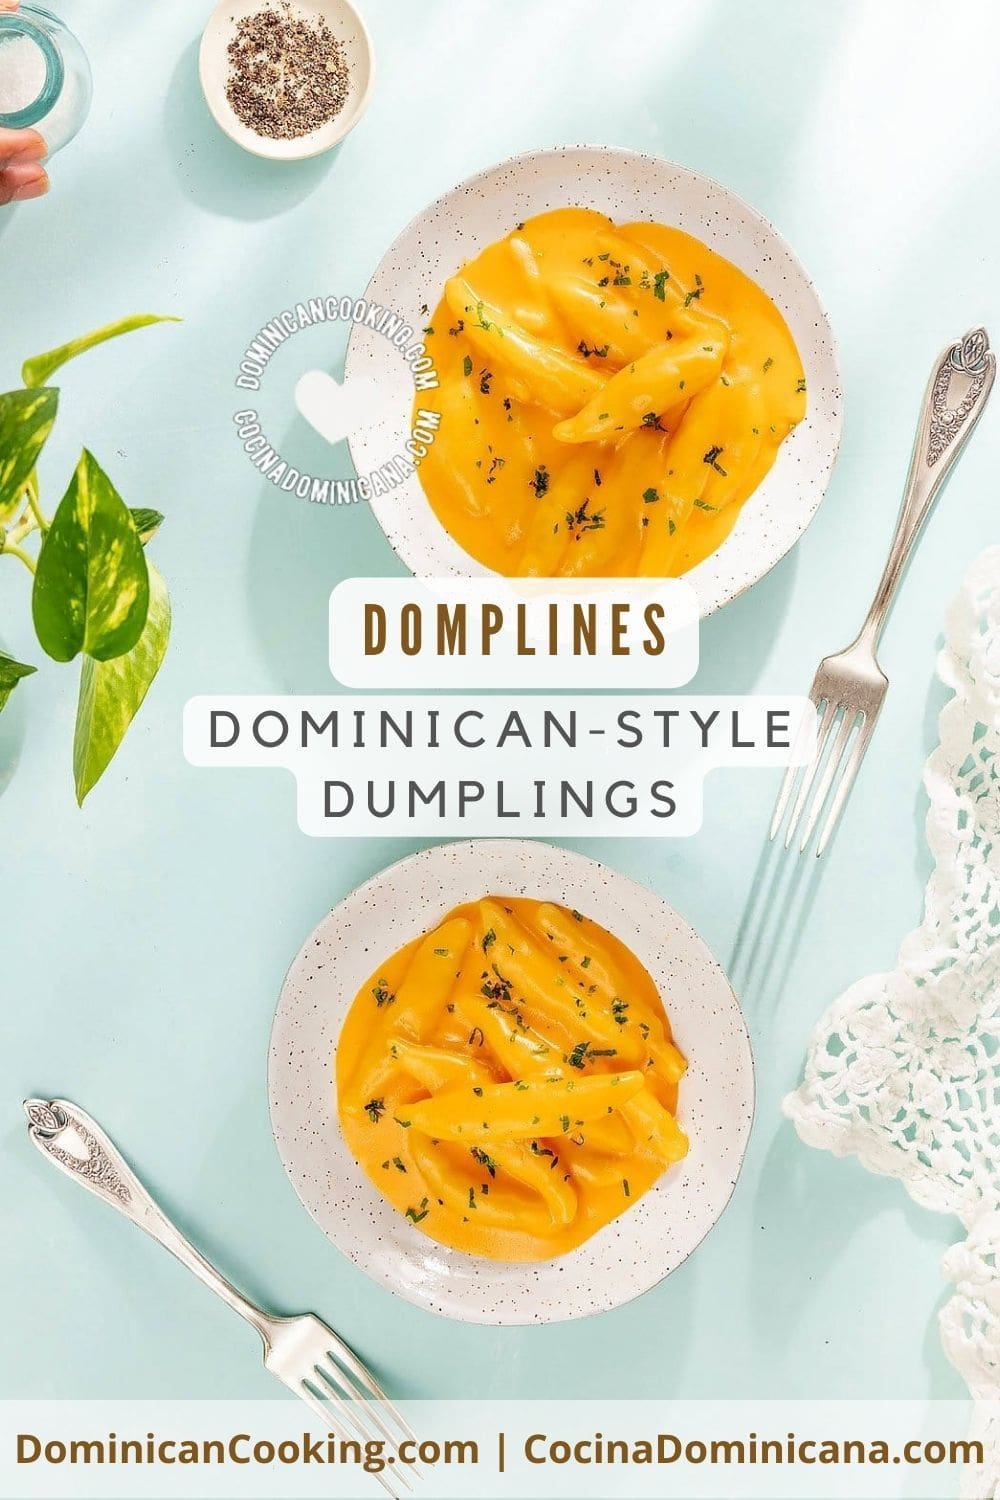 Dominican-style dumplings recipe.